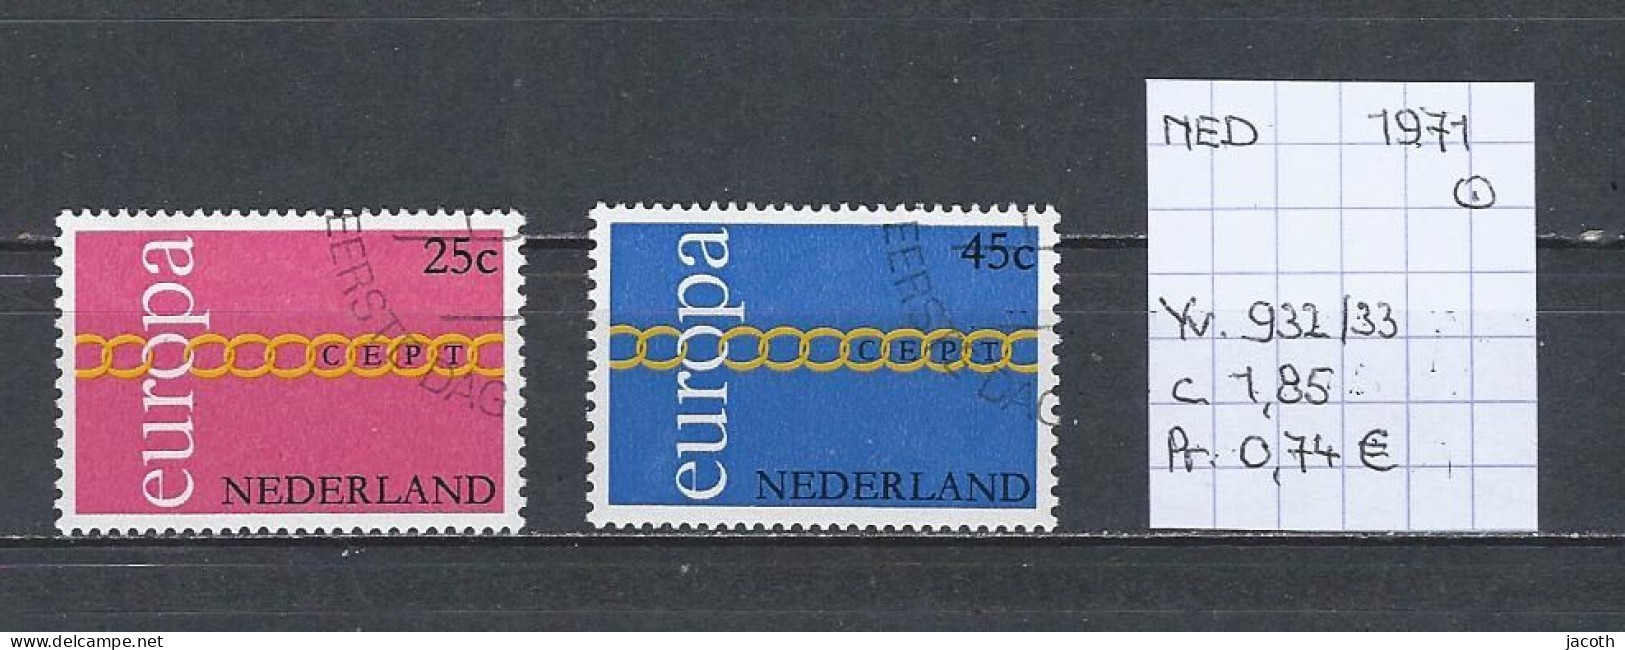 (TJ) Europa CEPT 1971 - Nederland YT 932/33 (gest./obl./used) - 1971